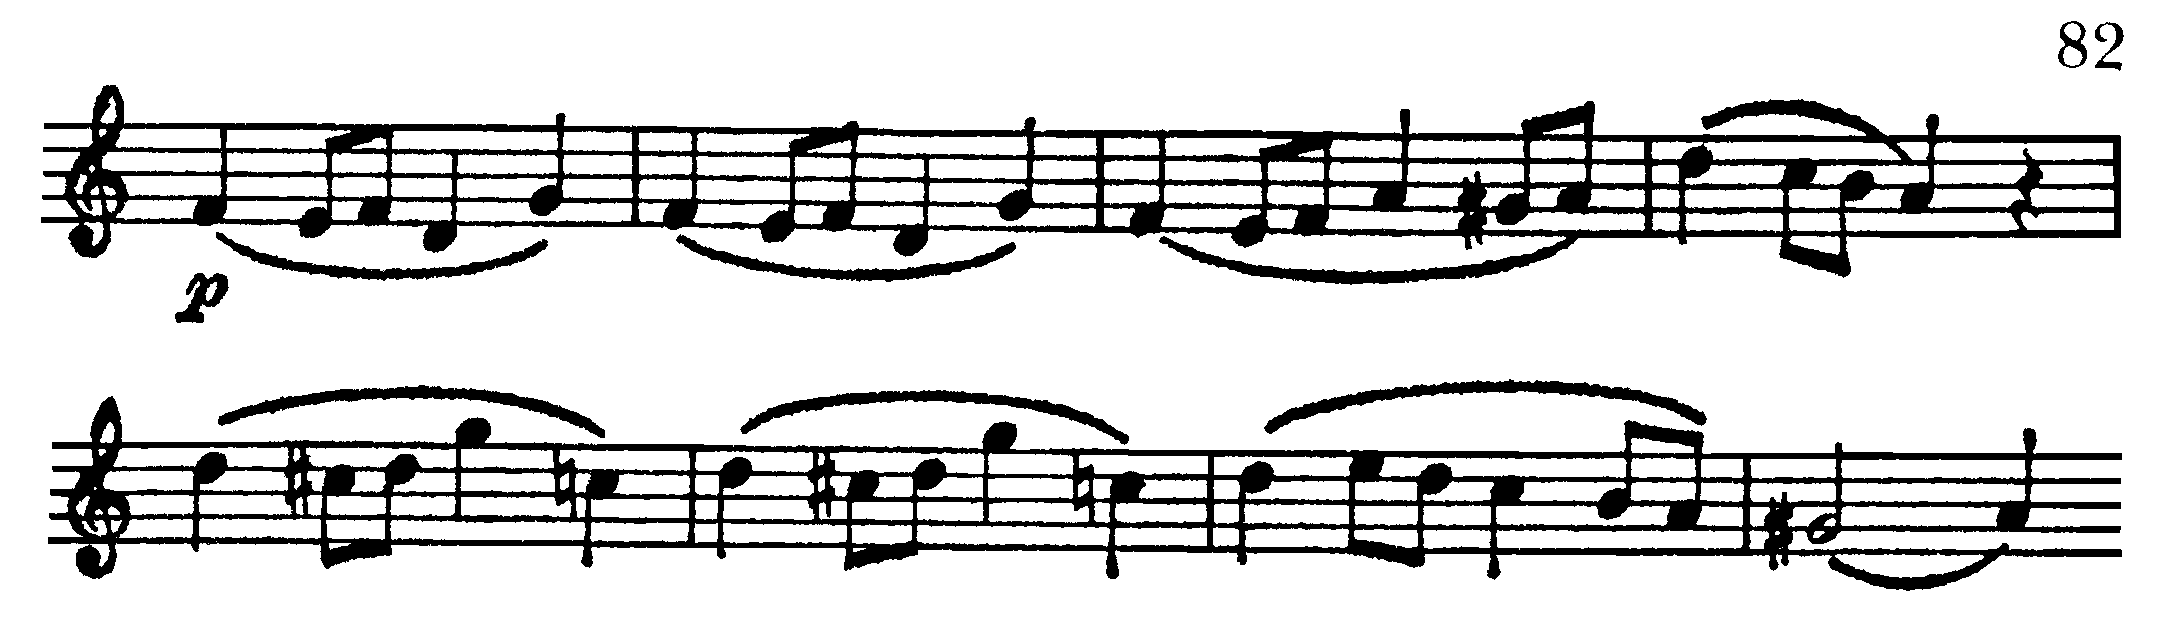 Symfoni, ex 82